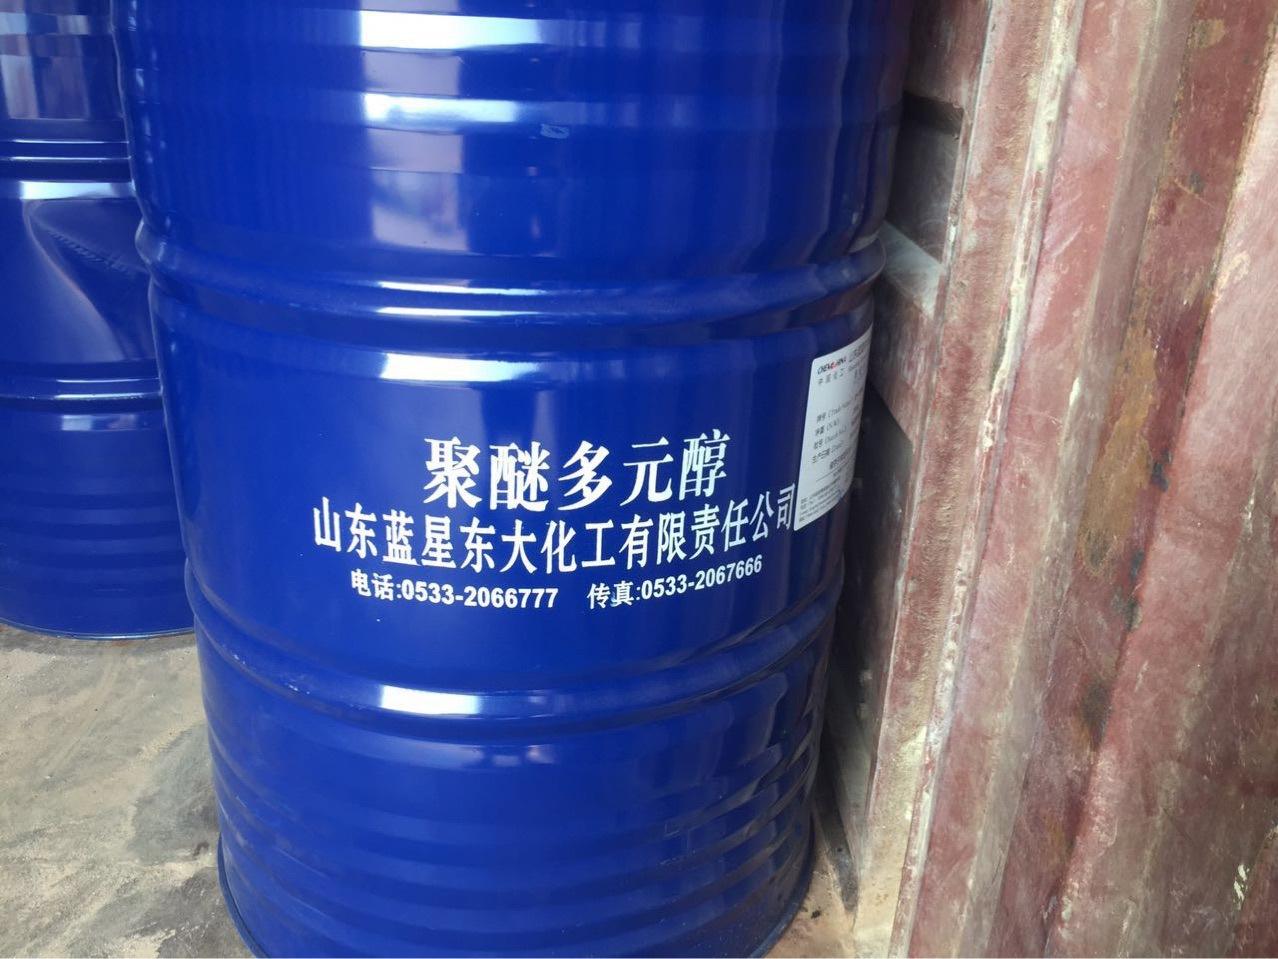 无锡回收颜料品蓝色源整桶半桶均可收购